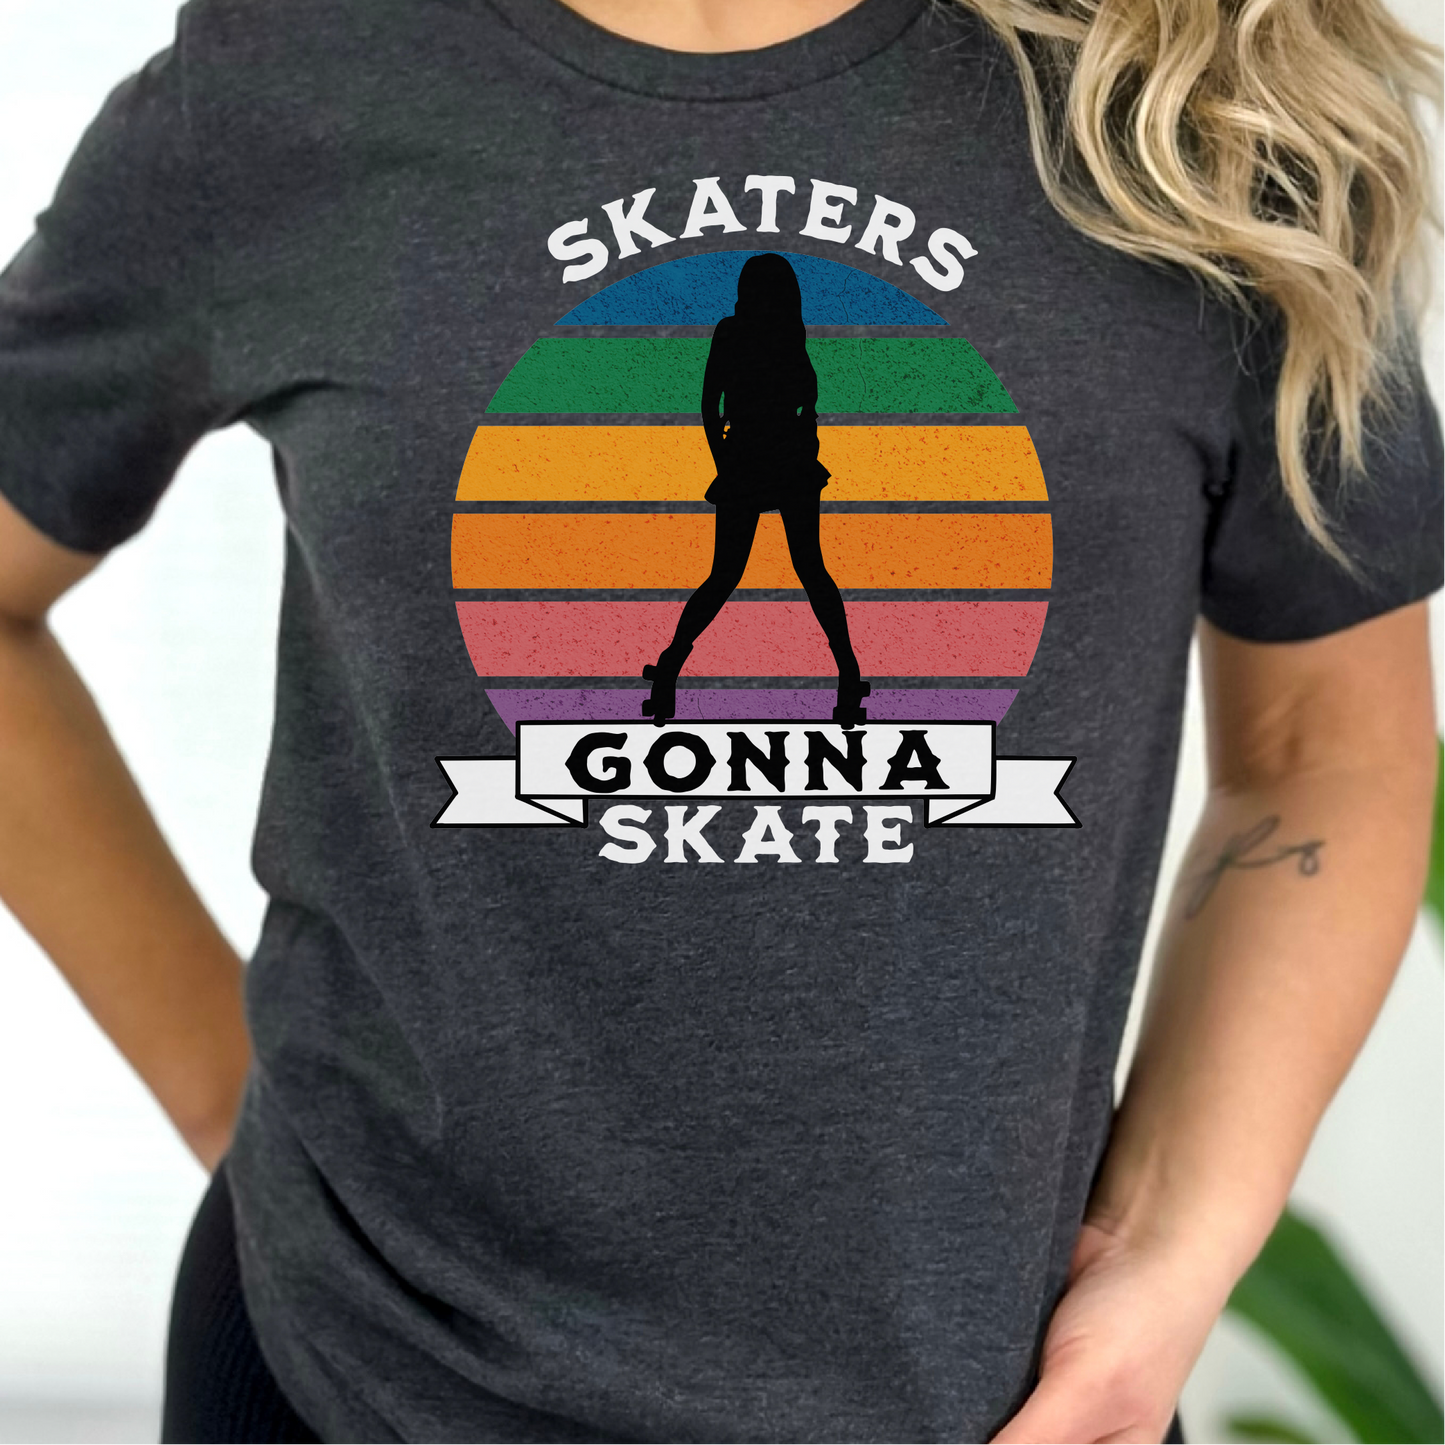 Skaters Gonna Skate T-Shirt, Roller Skate Shirt